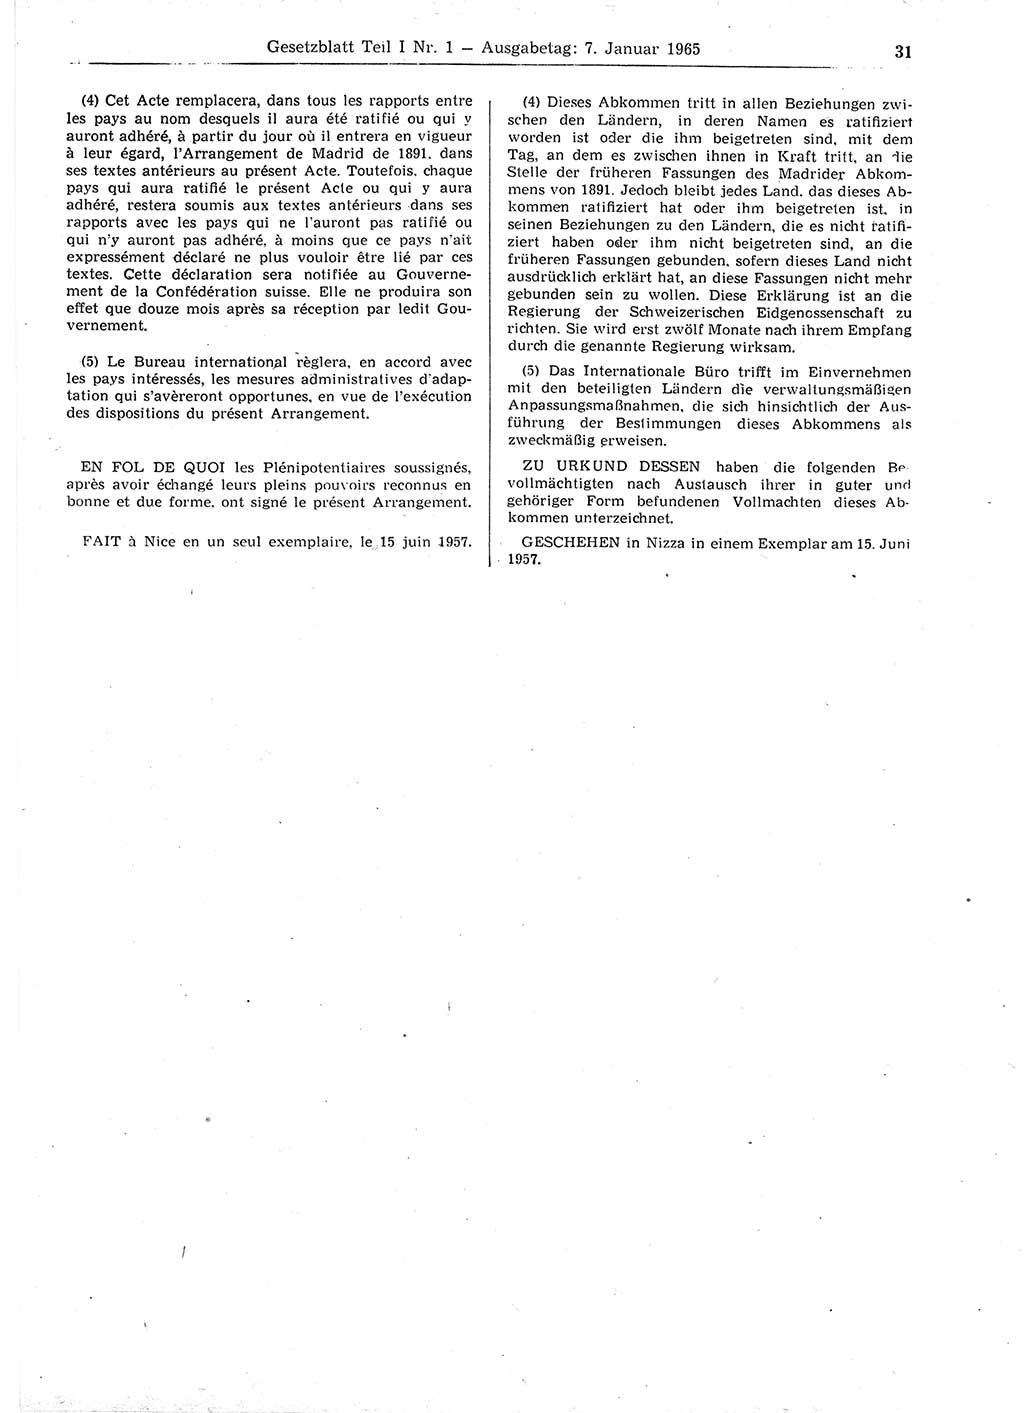 Gesetzblatt (GBl.) der Deutschen Demokratischen Republik (DDR) Teil Ⅰ 1965, Seite 31 (GBl. DDR Ⅰ 1965, S. 31)